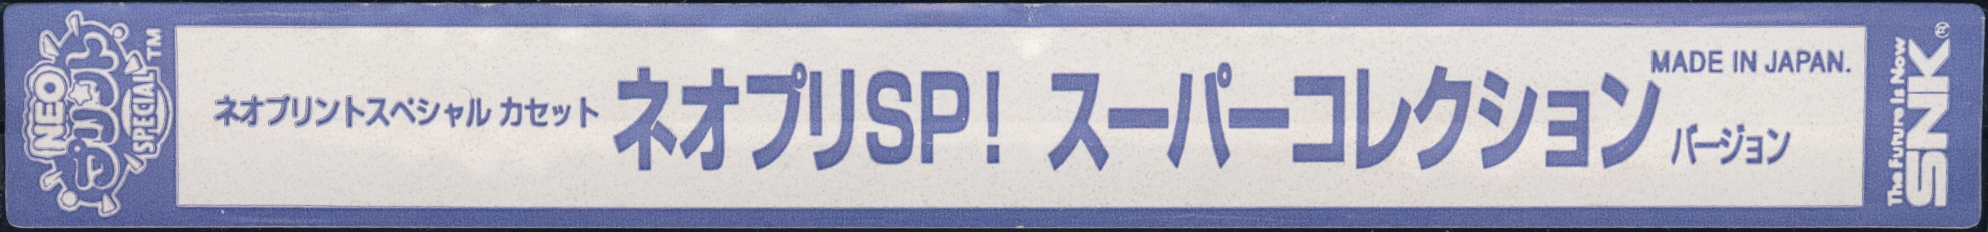 NeoPri SP! Super Collection Version